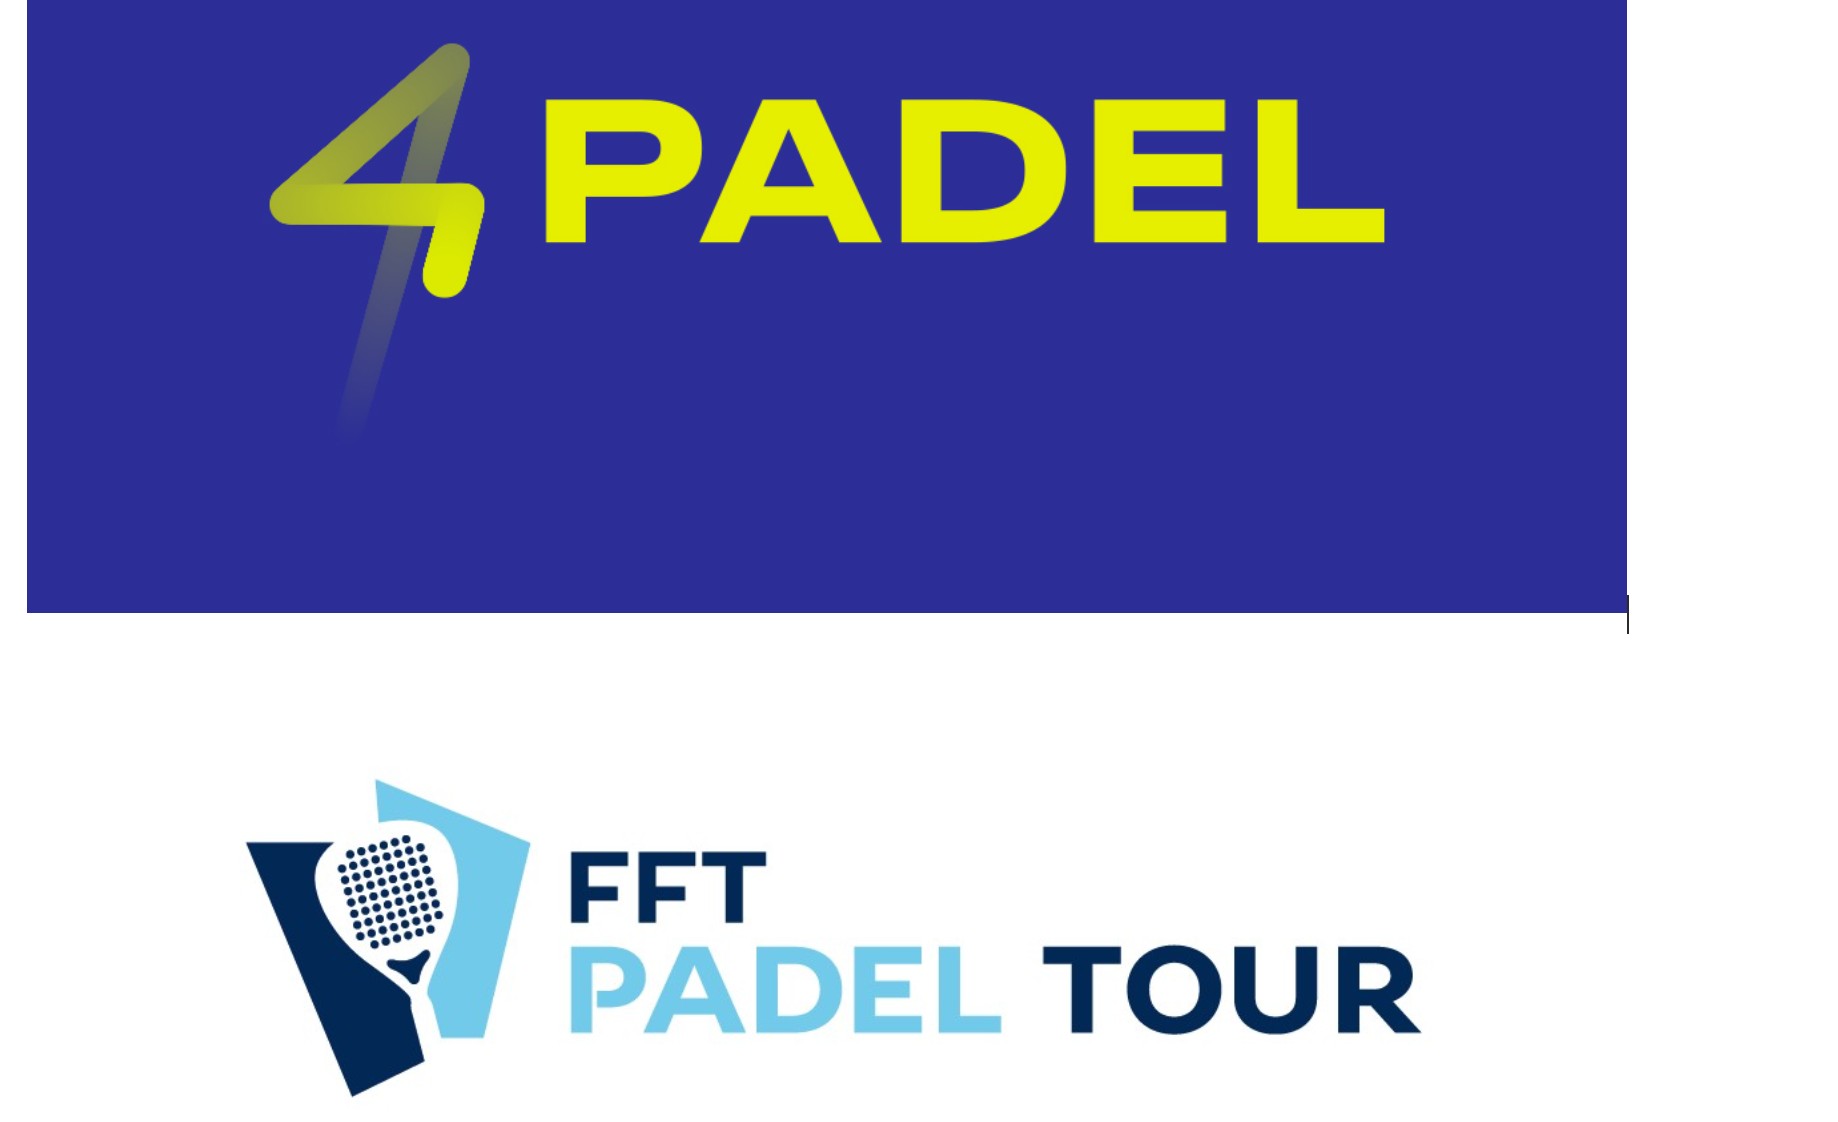 4PADEL renforce sa relation avec le FFT via le PADEL TOUR 2019